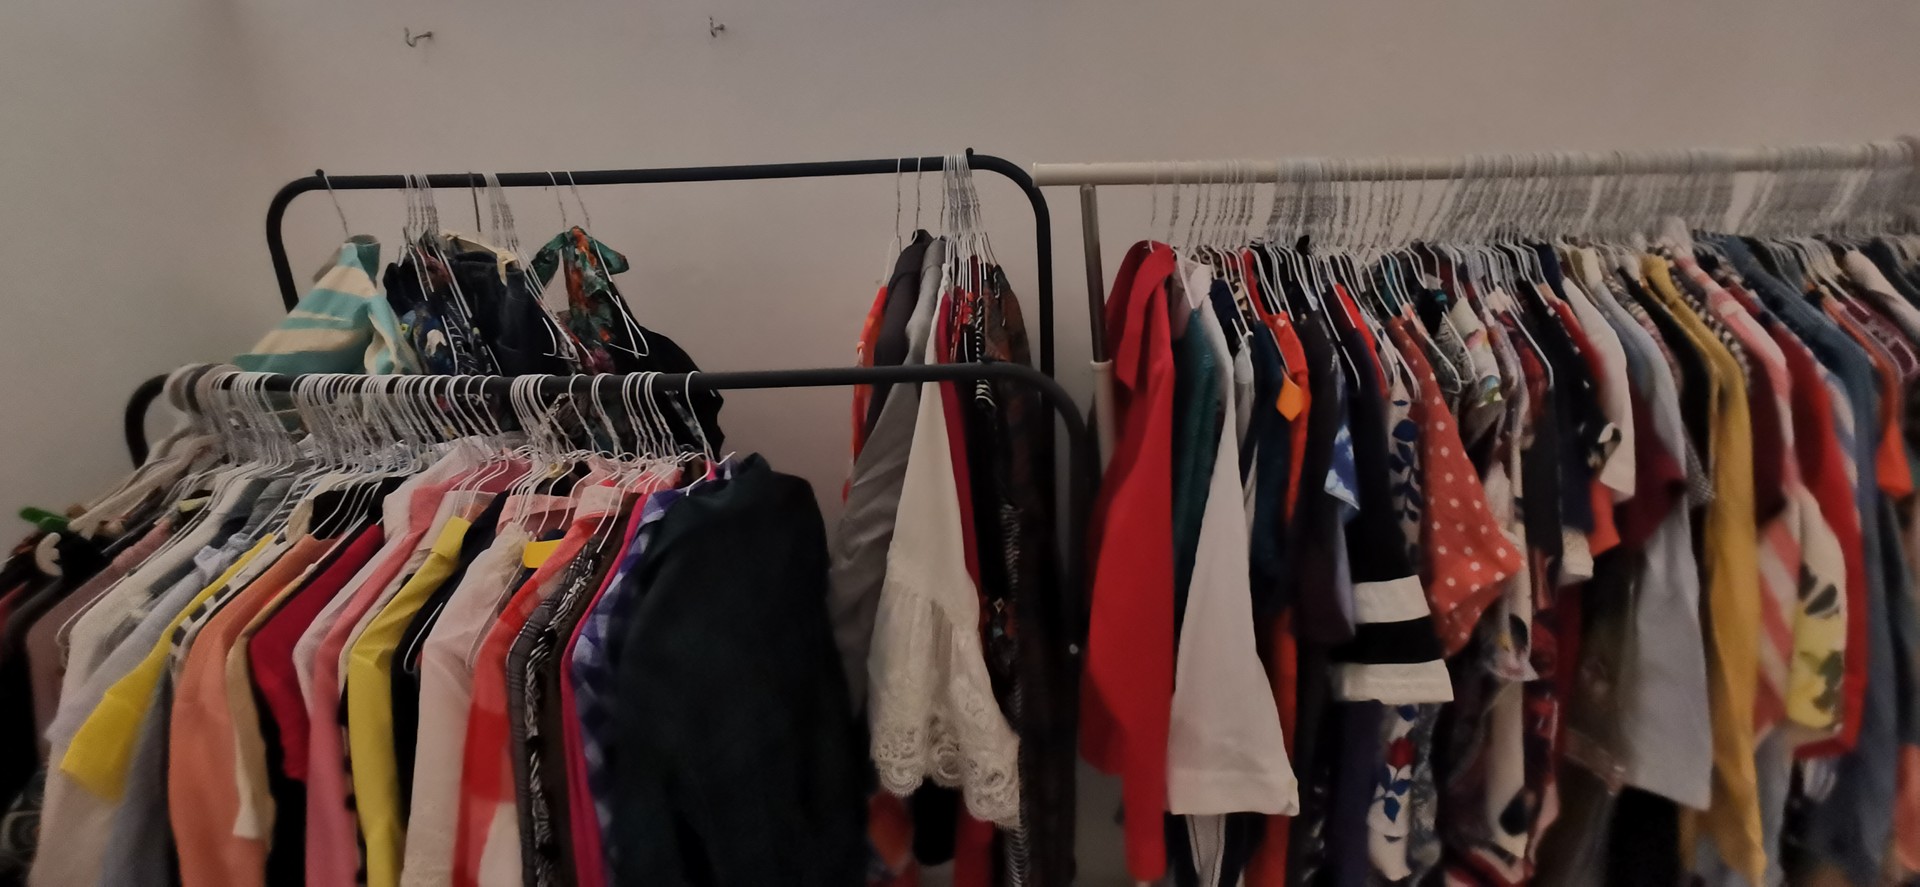 ropa para mujer - Vendo lote de ropa usada y nueva (Mujer y Hombre)